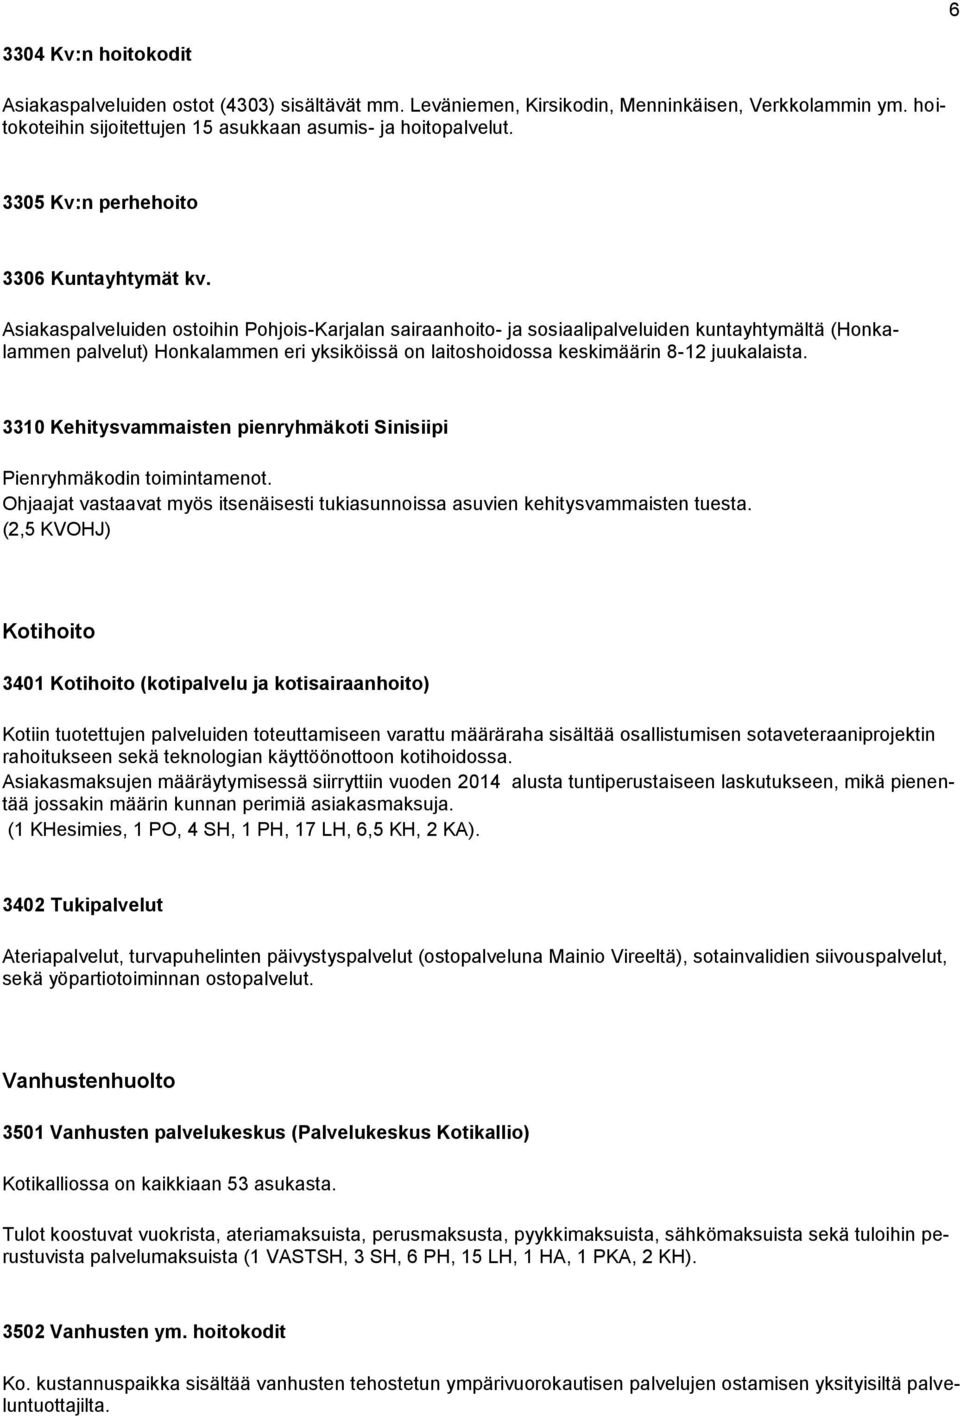 Asiakaspalveluiden ostoihin Pohjois-Karjalan sairaanhoito- ja sosiaalipalveluiden kuntayhtymältä (Honkalammen palvelut) Honkalammen eri yksiköissä on laitoshoidossa keskimäärin 8-12 juukalaista.